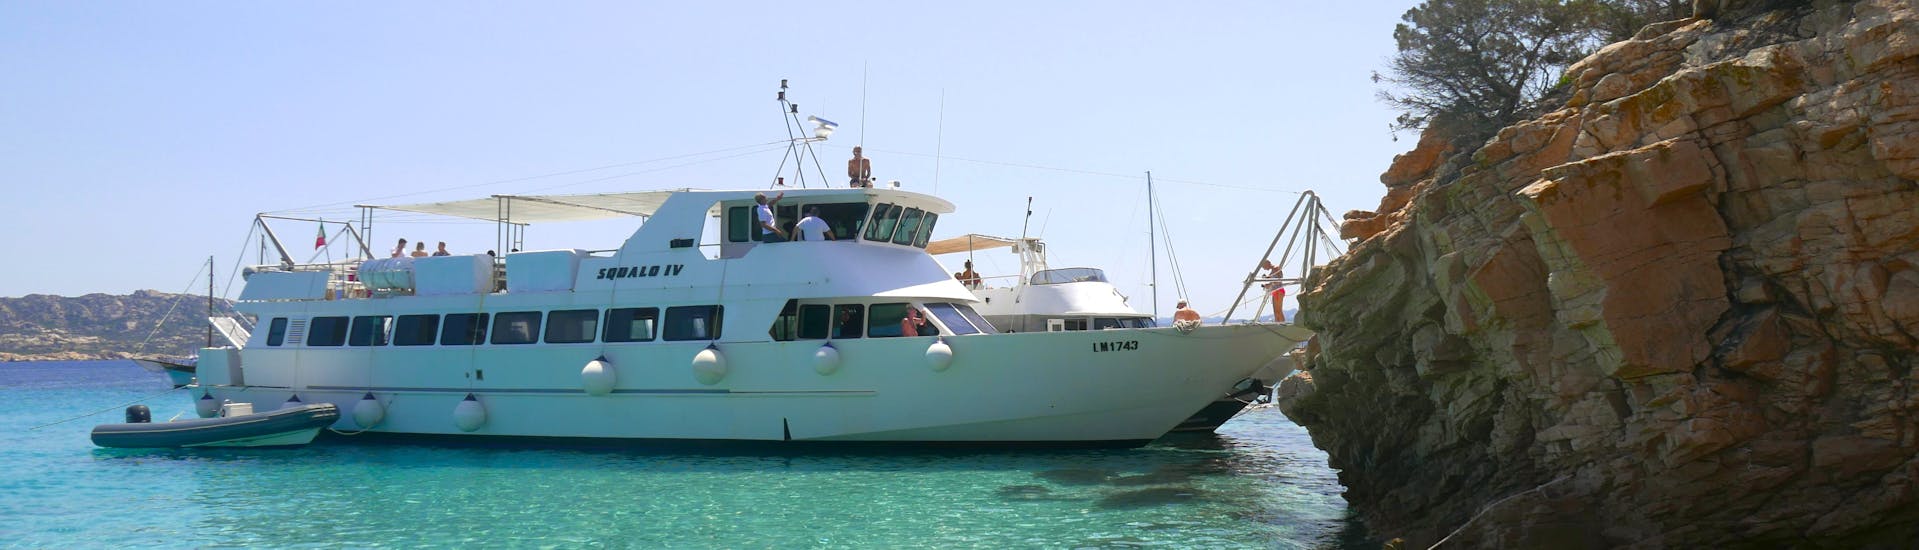 El barco de motor utilizado por Flotta del Parco La Maddalena durante una parada durante el paseo en barco de un día al archipiélago de La Maddalena.